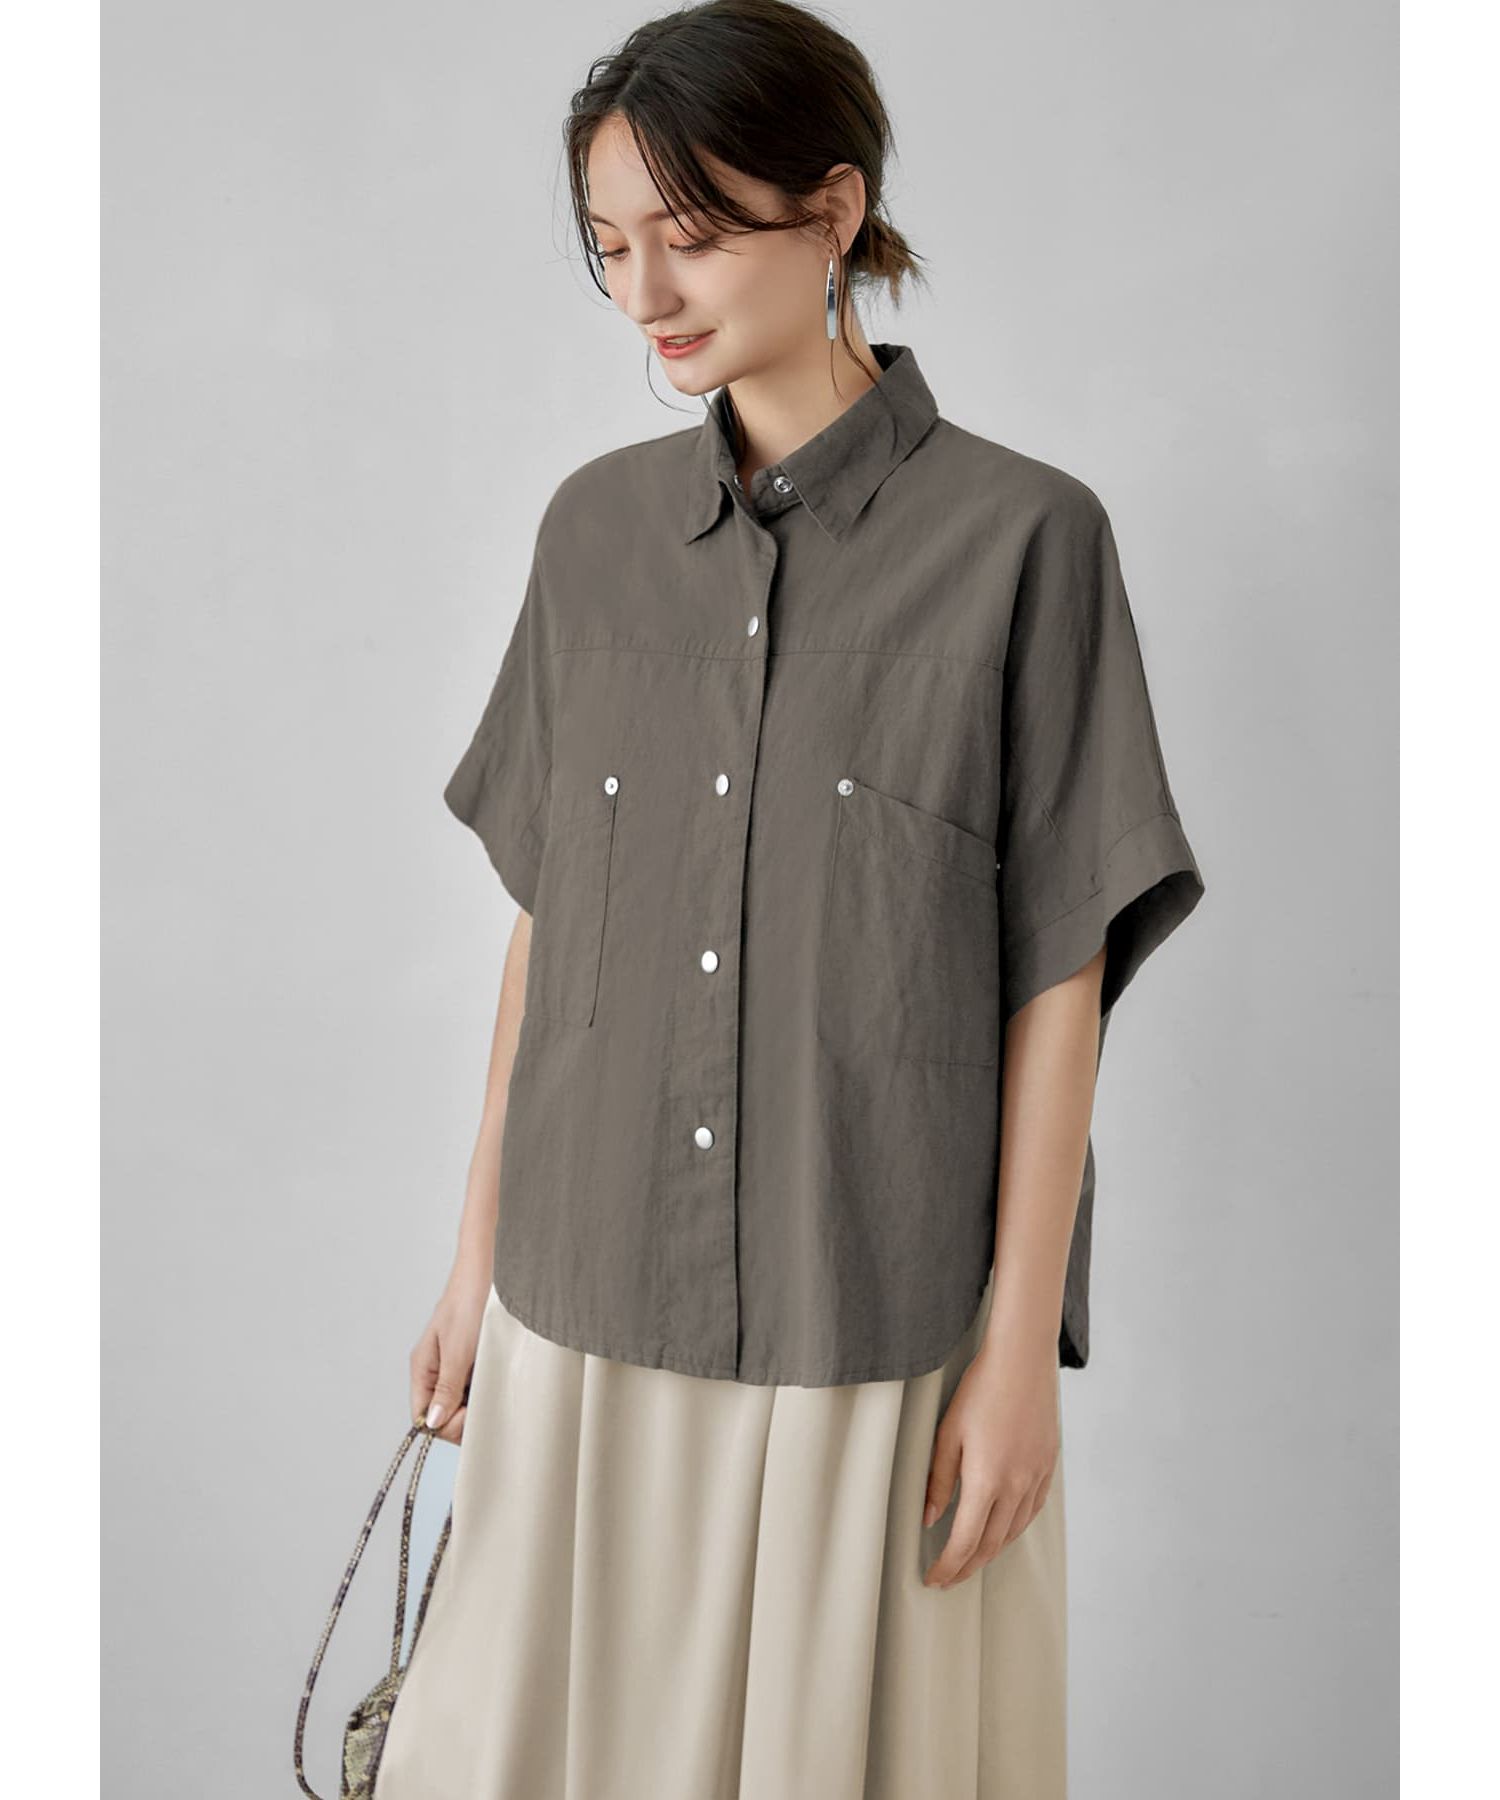 綿麻スナップボタンシャツジャケット|STYLE DELI(スタイルデリ